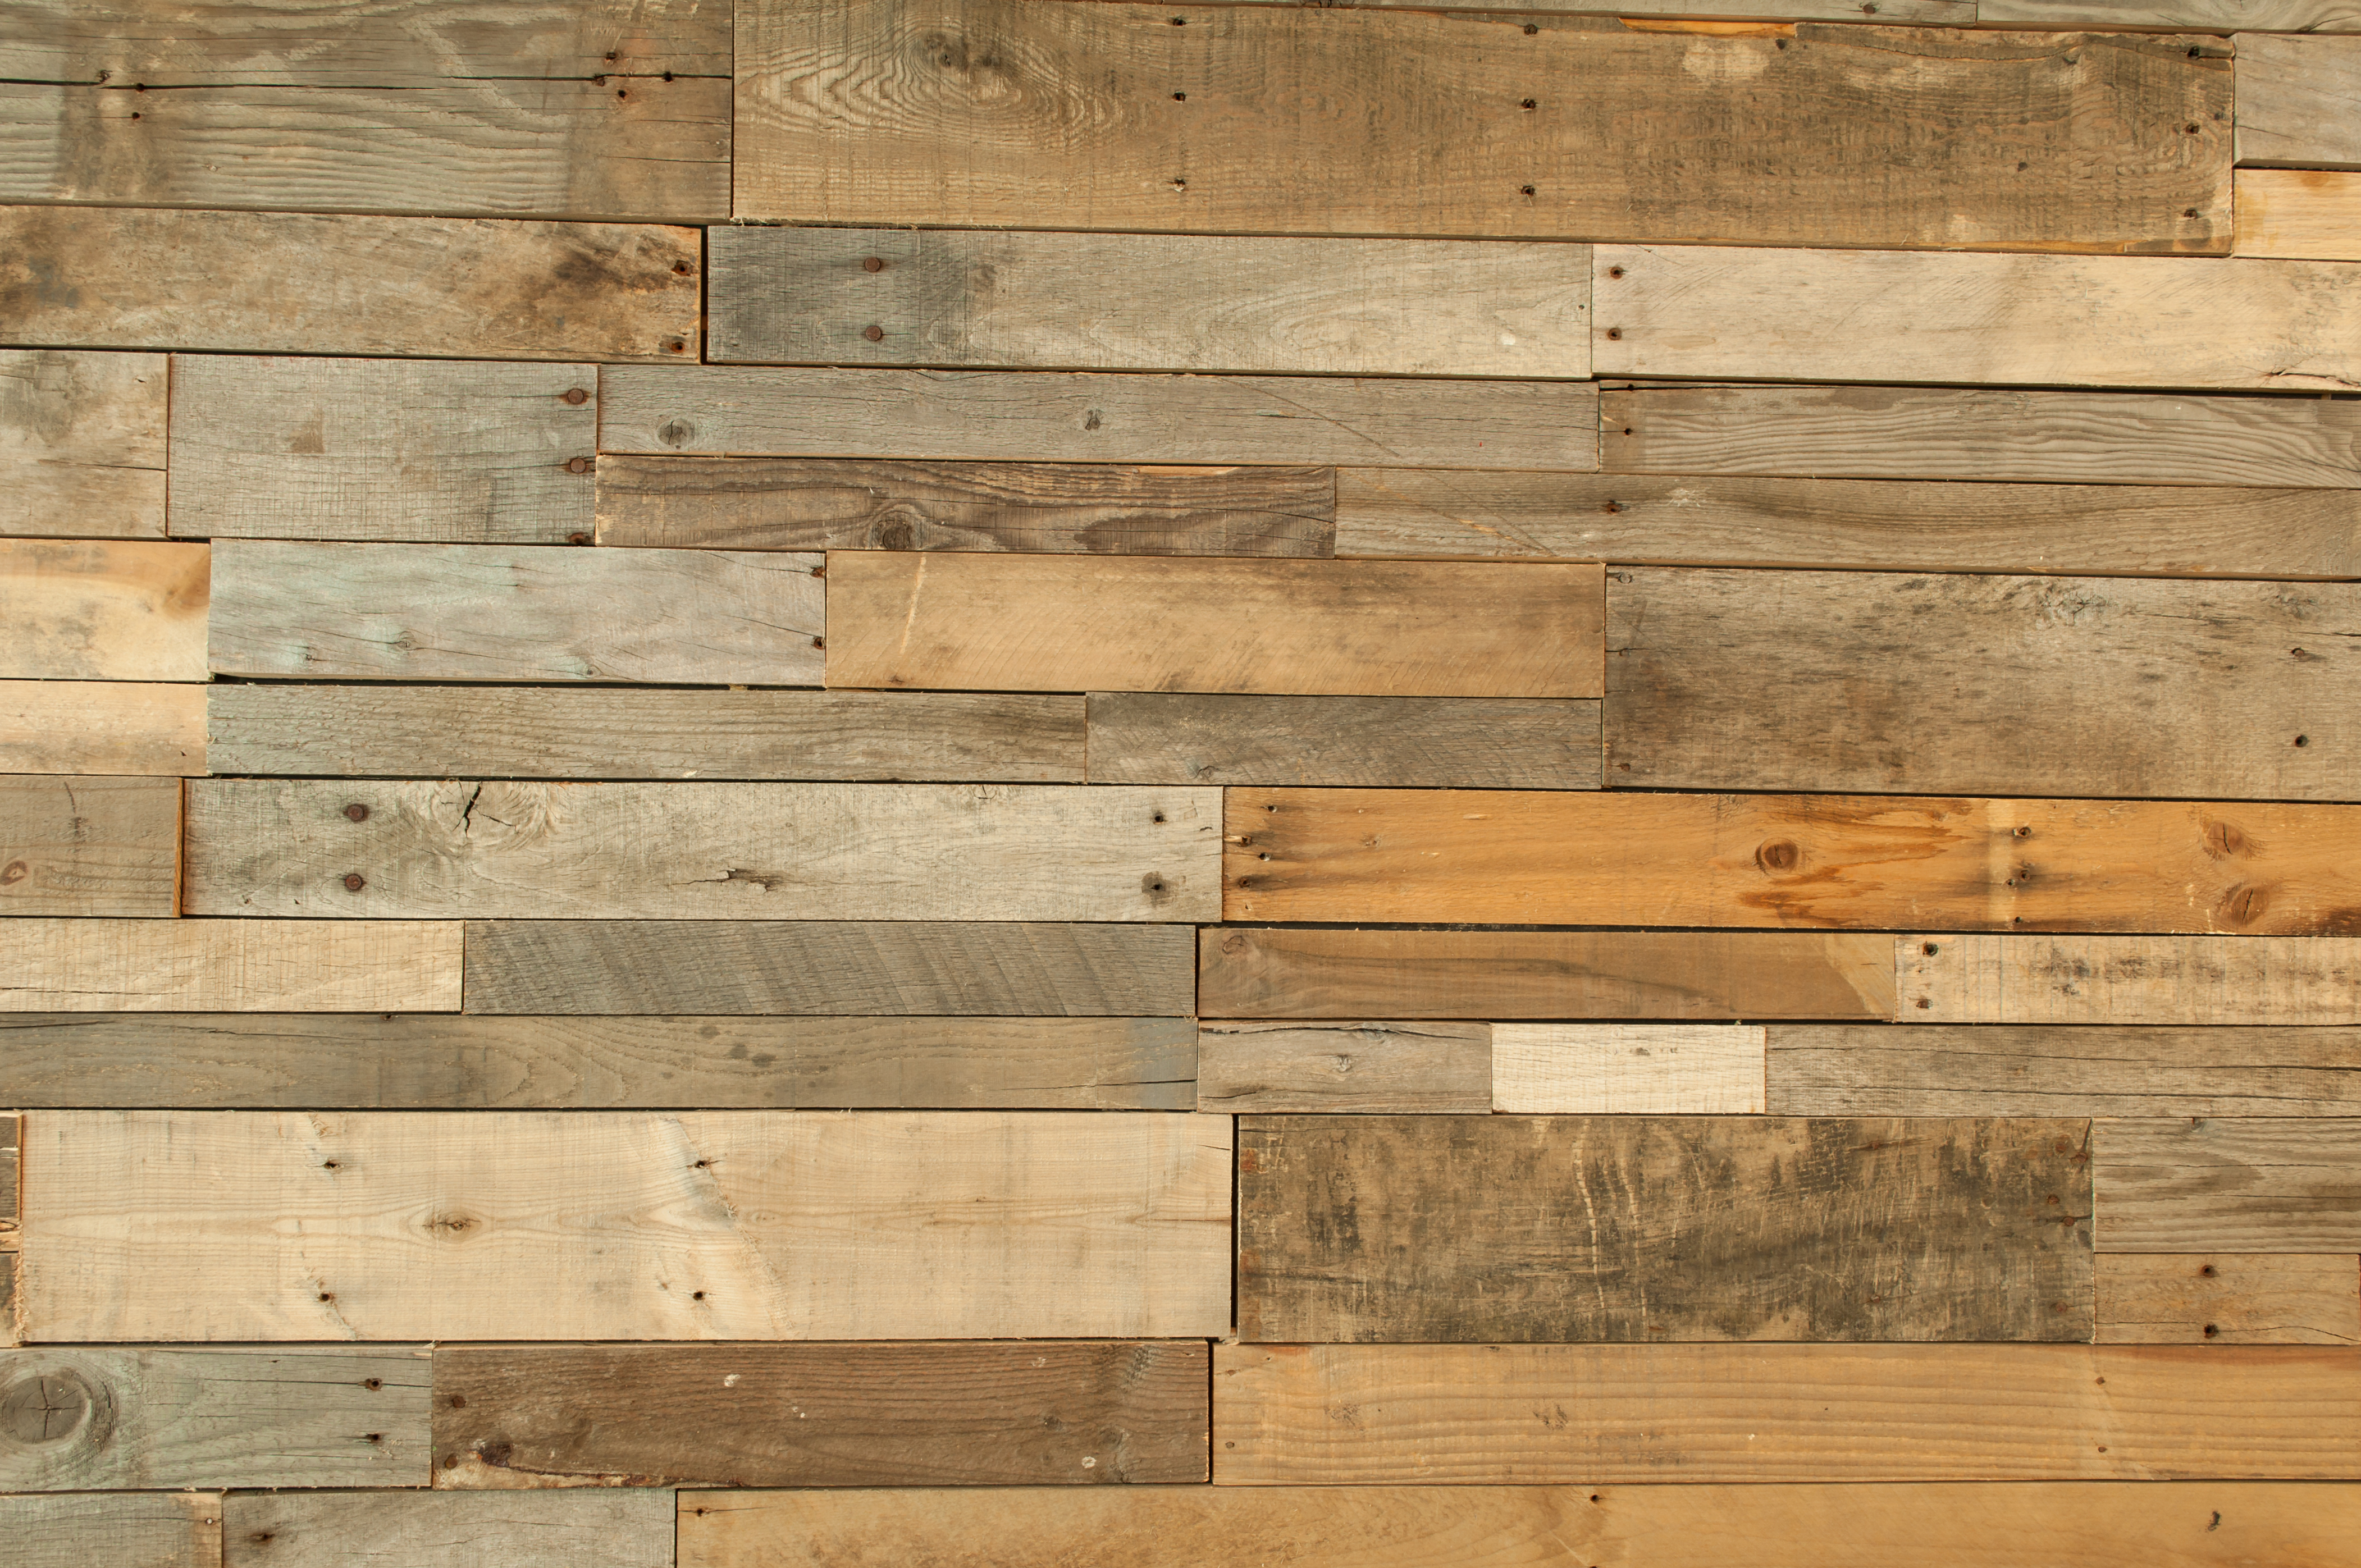 wallpaper that looks like wood paneling,wood,wood flooring,hardwood,floor,plank